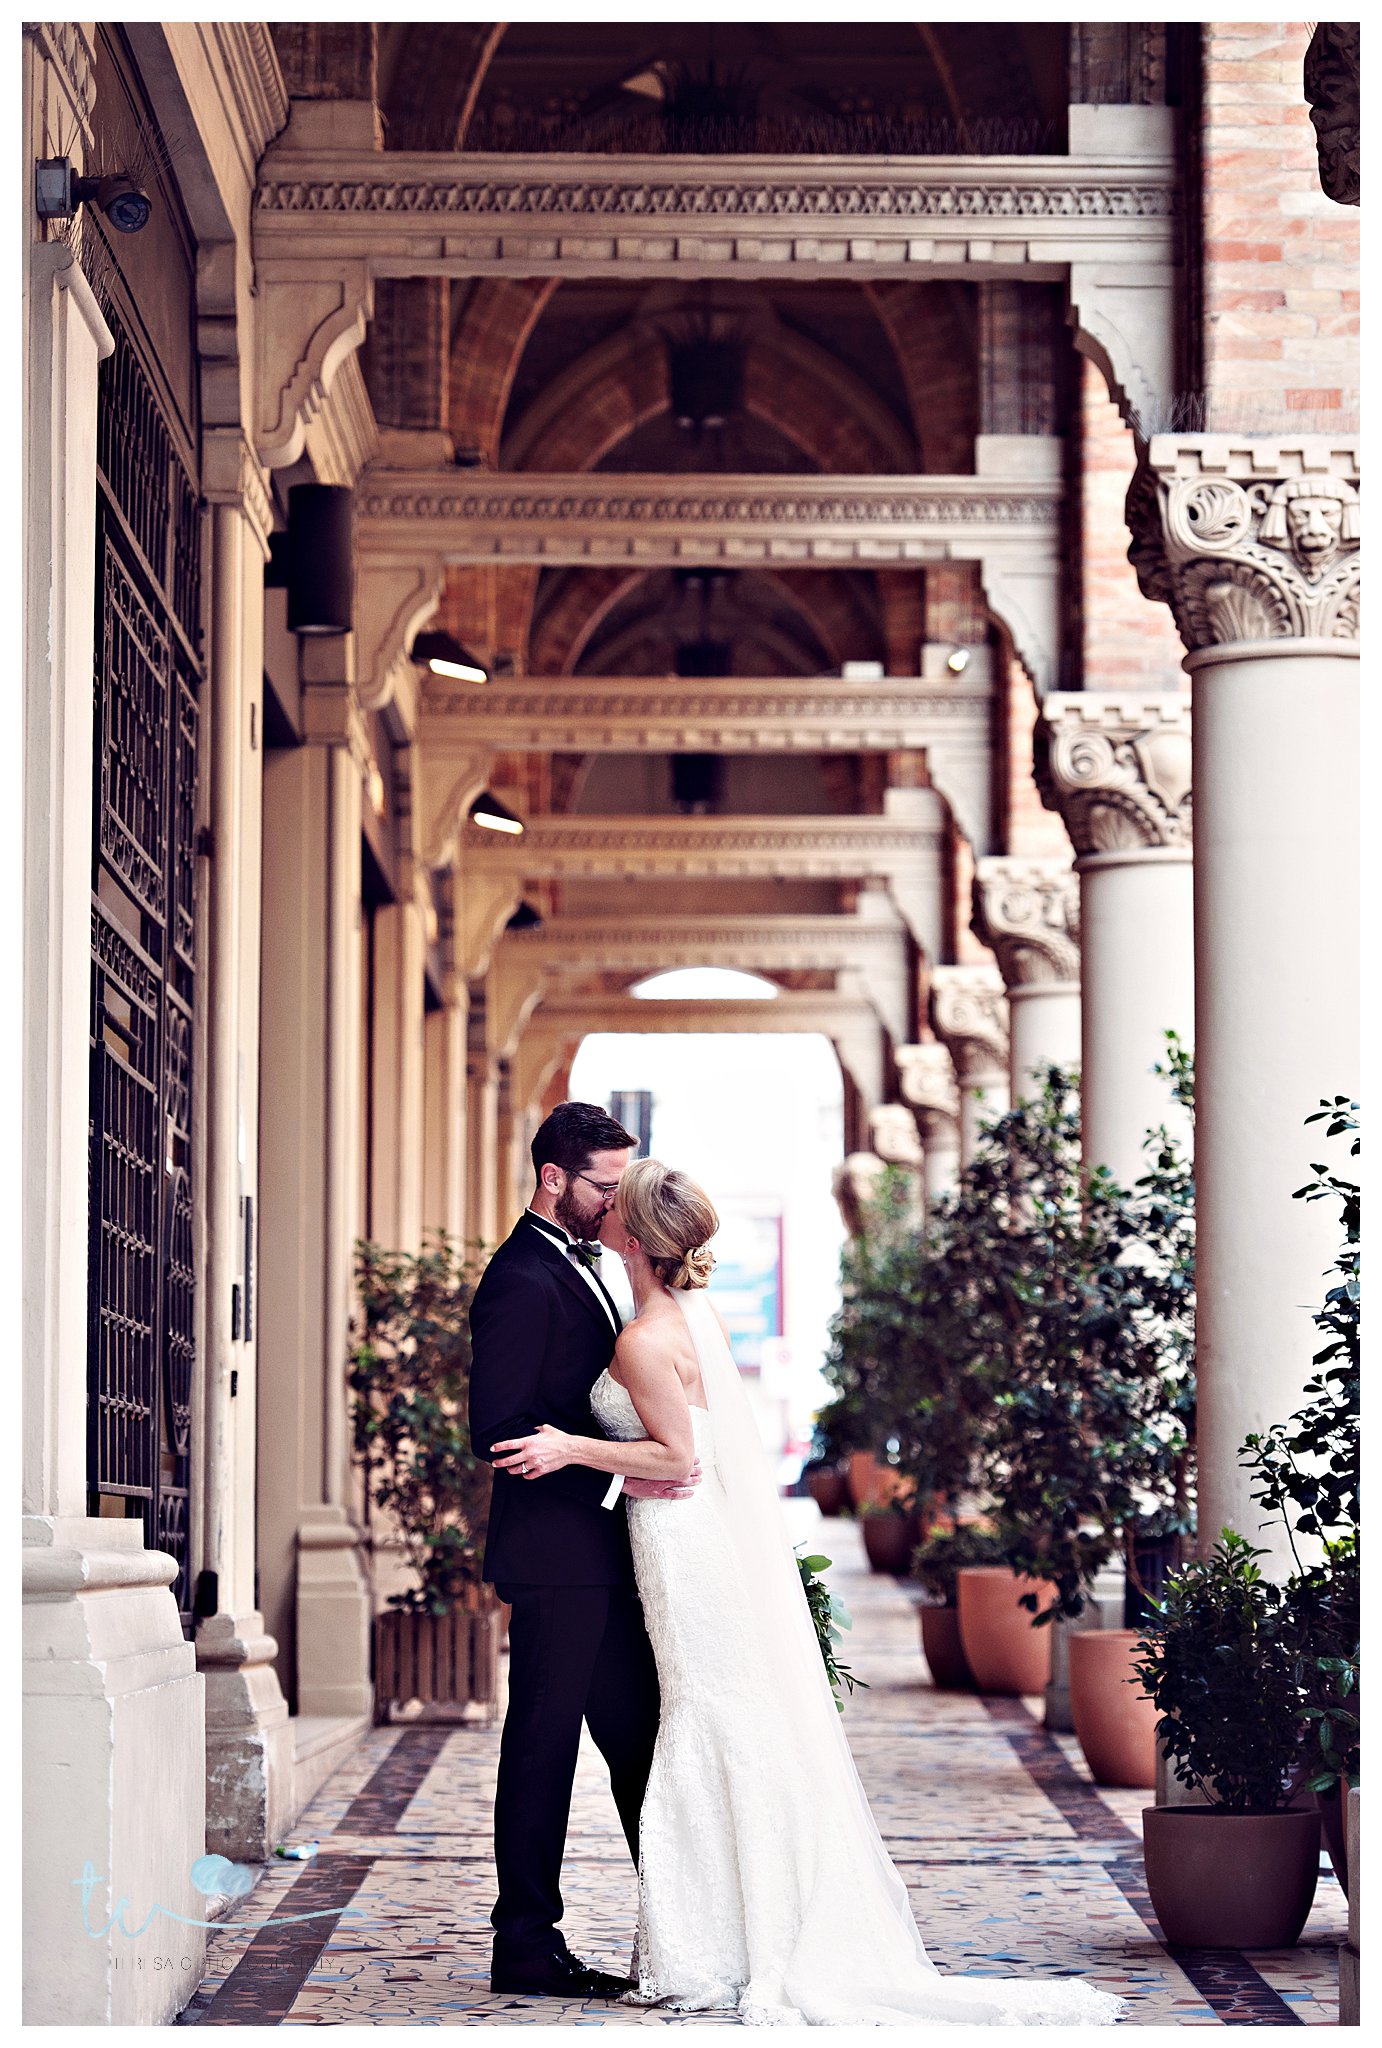 Wedding Photography Sorrento- Wedding Phjotographer Sorrento- Sorrento Wedding Photography- Sorrento Wedding Photographer- Sophisticated Wedding Photography Italy